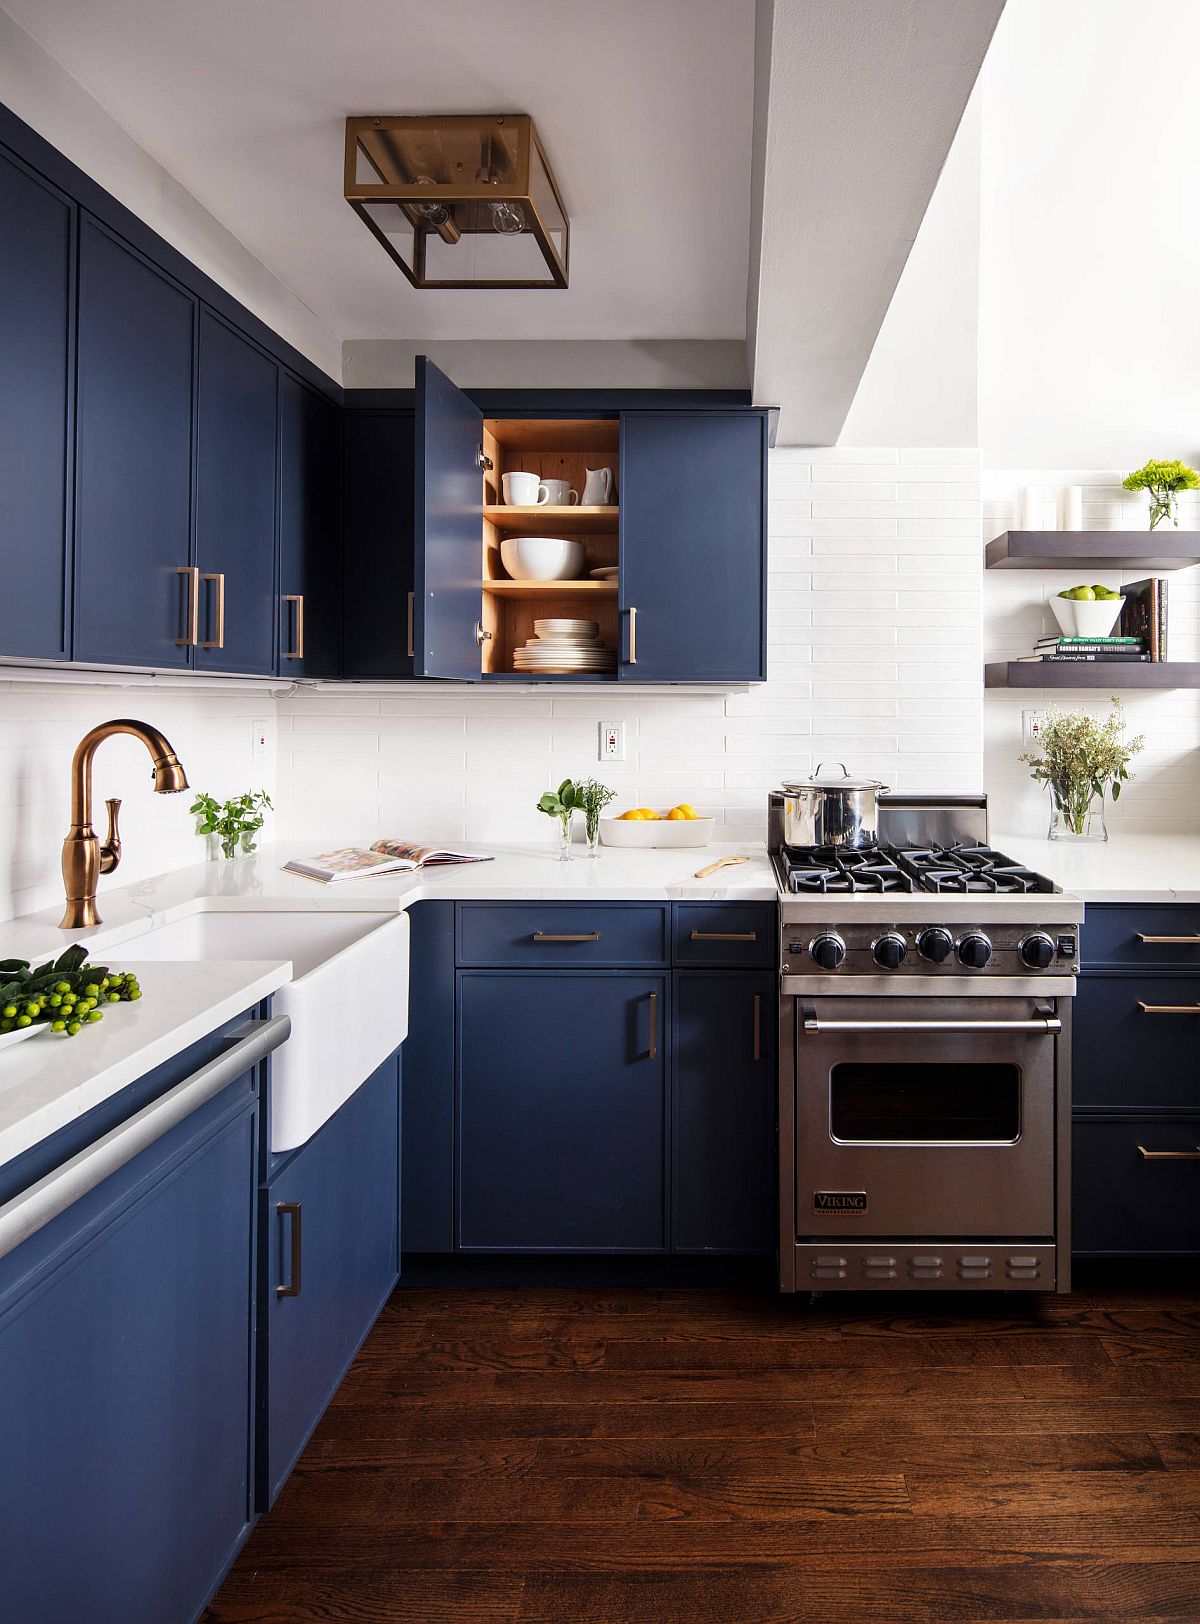 Phòng bếp tại New York tươi sáng và vui vẻ nhờ sự phối hợp của gam màu trắng và xanh lam đậm bắt mắt.